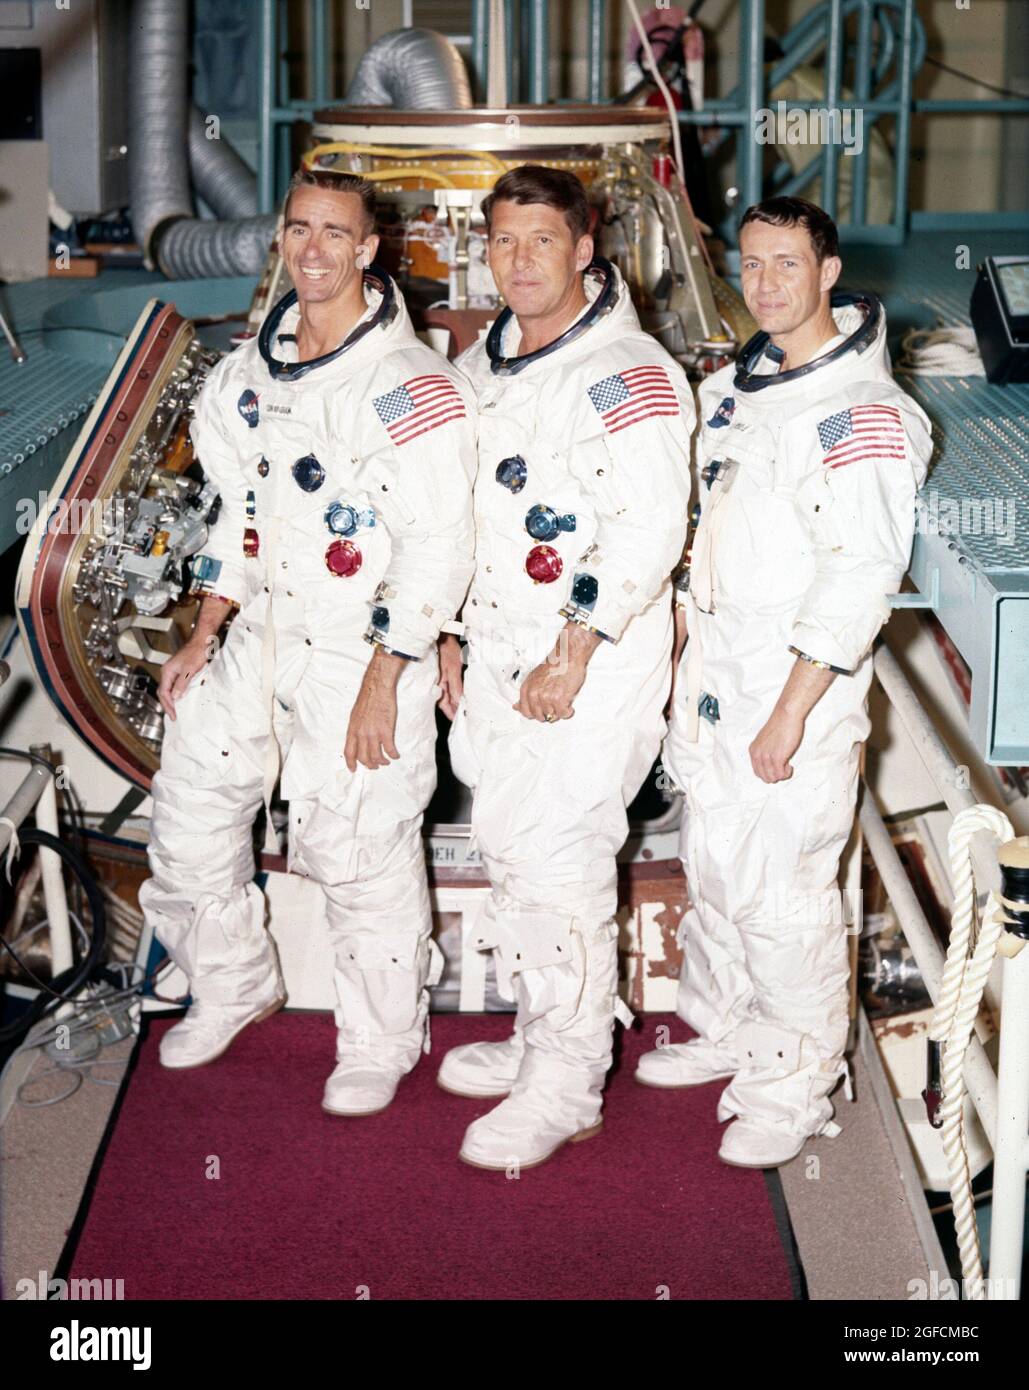 Von links nach rechts, im Apollo 7 Crew Portrait, sind die Astronauten R. Walter Cunningham, Pilot der Mondlandefähre; Walter M. Schirra, Jr., Kommandant; Und Donn F. Eisele, Kommandomodulpilot. Die Apollo 7-Mission, die am 11. Oktober 1968 von einem Saturn-IB-Trägerrakete unterstützt wurde, war der erste bemannte Flug der Apollo-Raumsonde Stockfoto